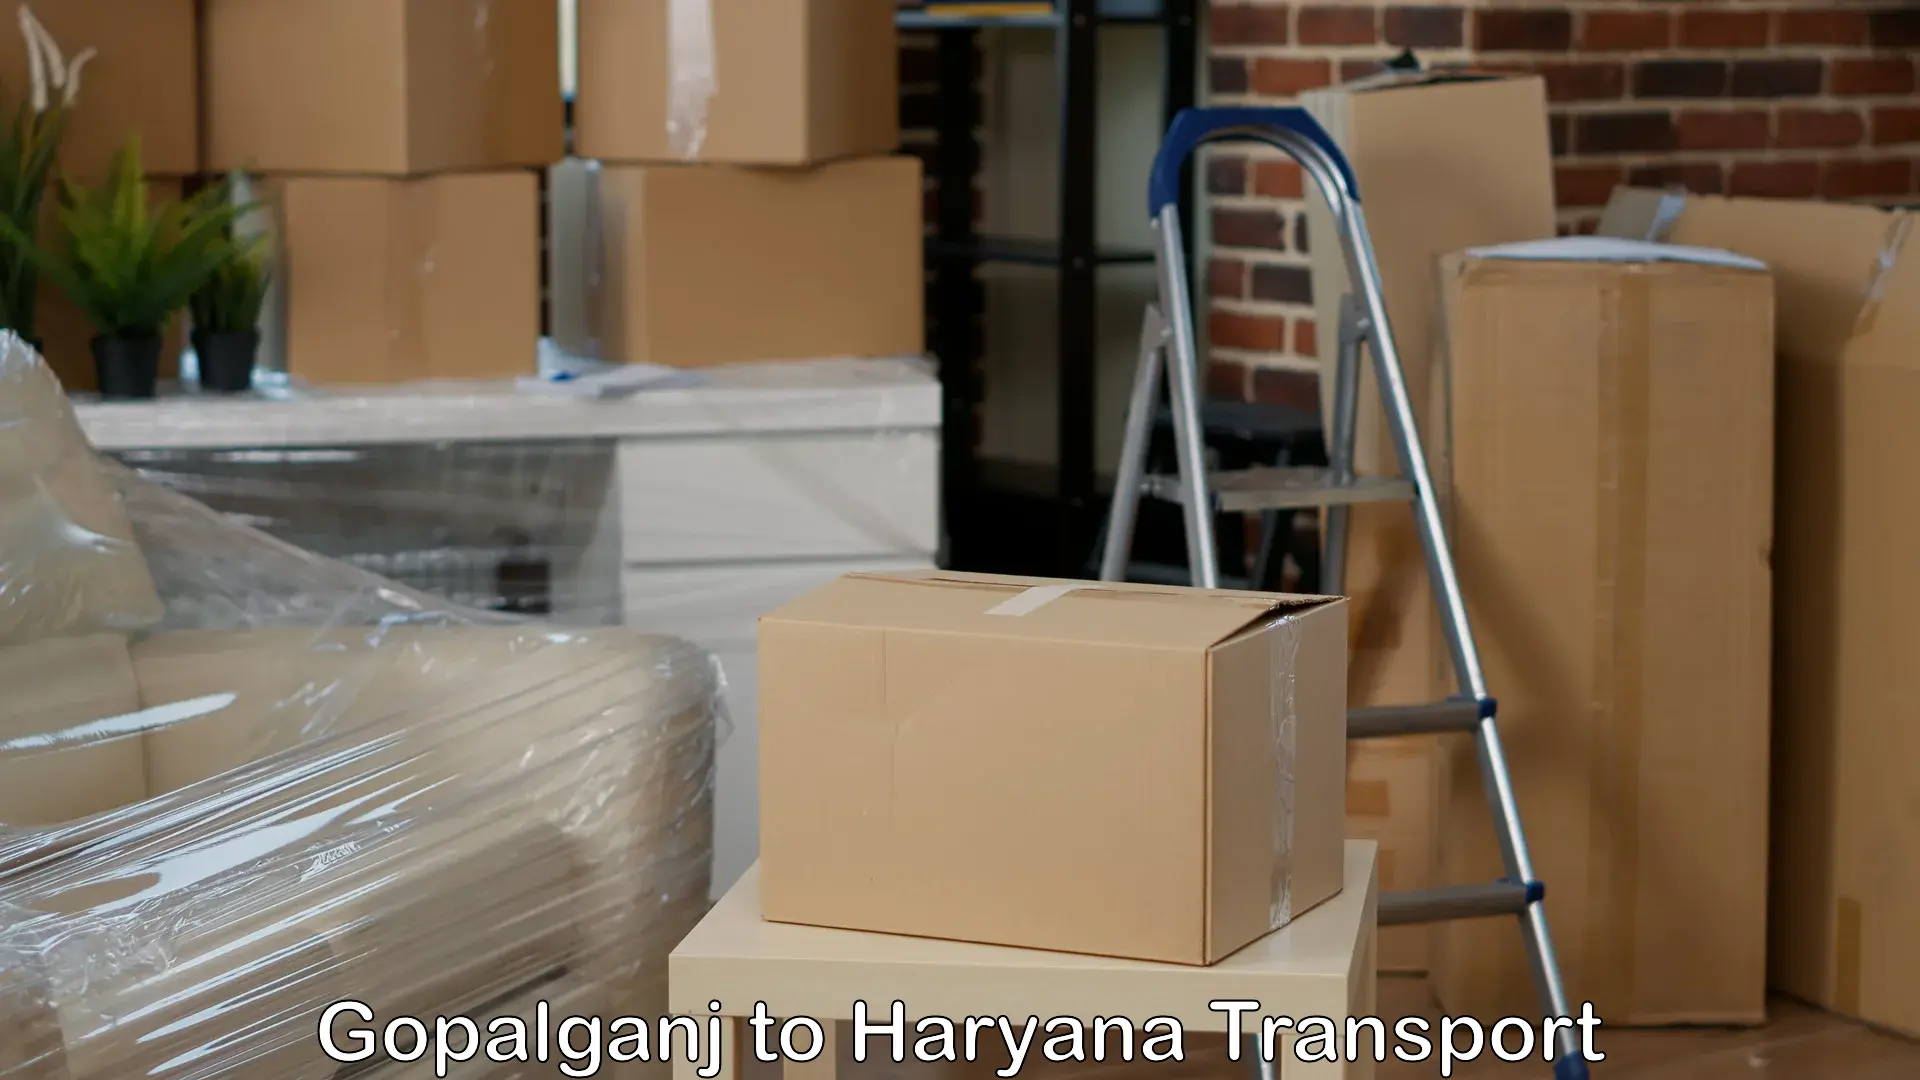 Nearest transport service Gopalganj to Bilaspur Haryana